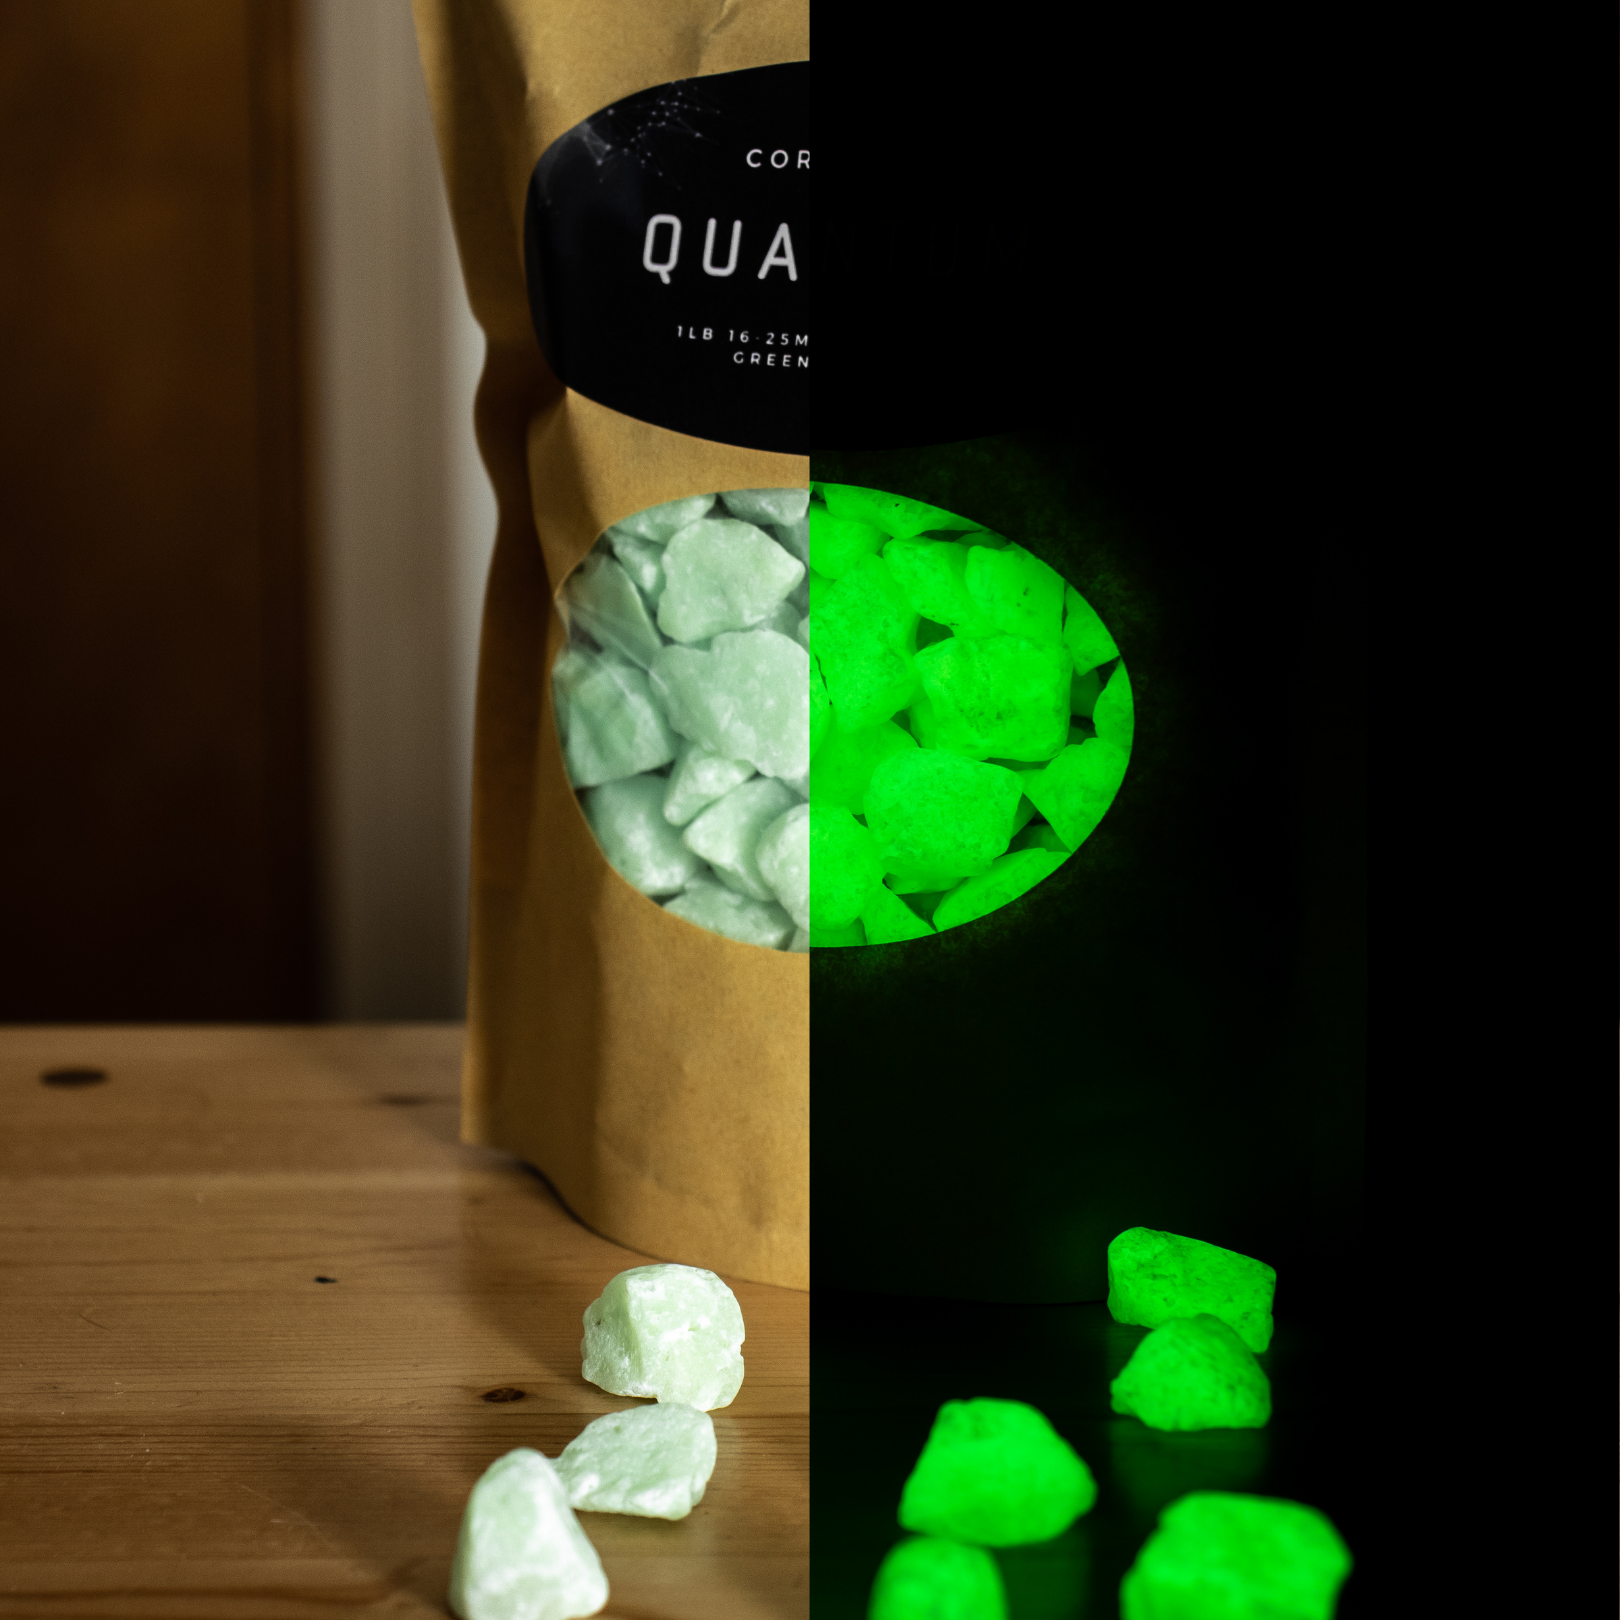 16-25mm Quantum Grade Aggregate - Green 1lb